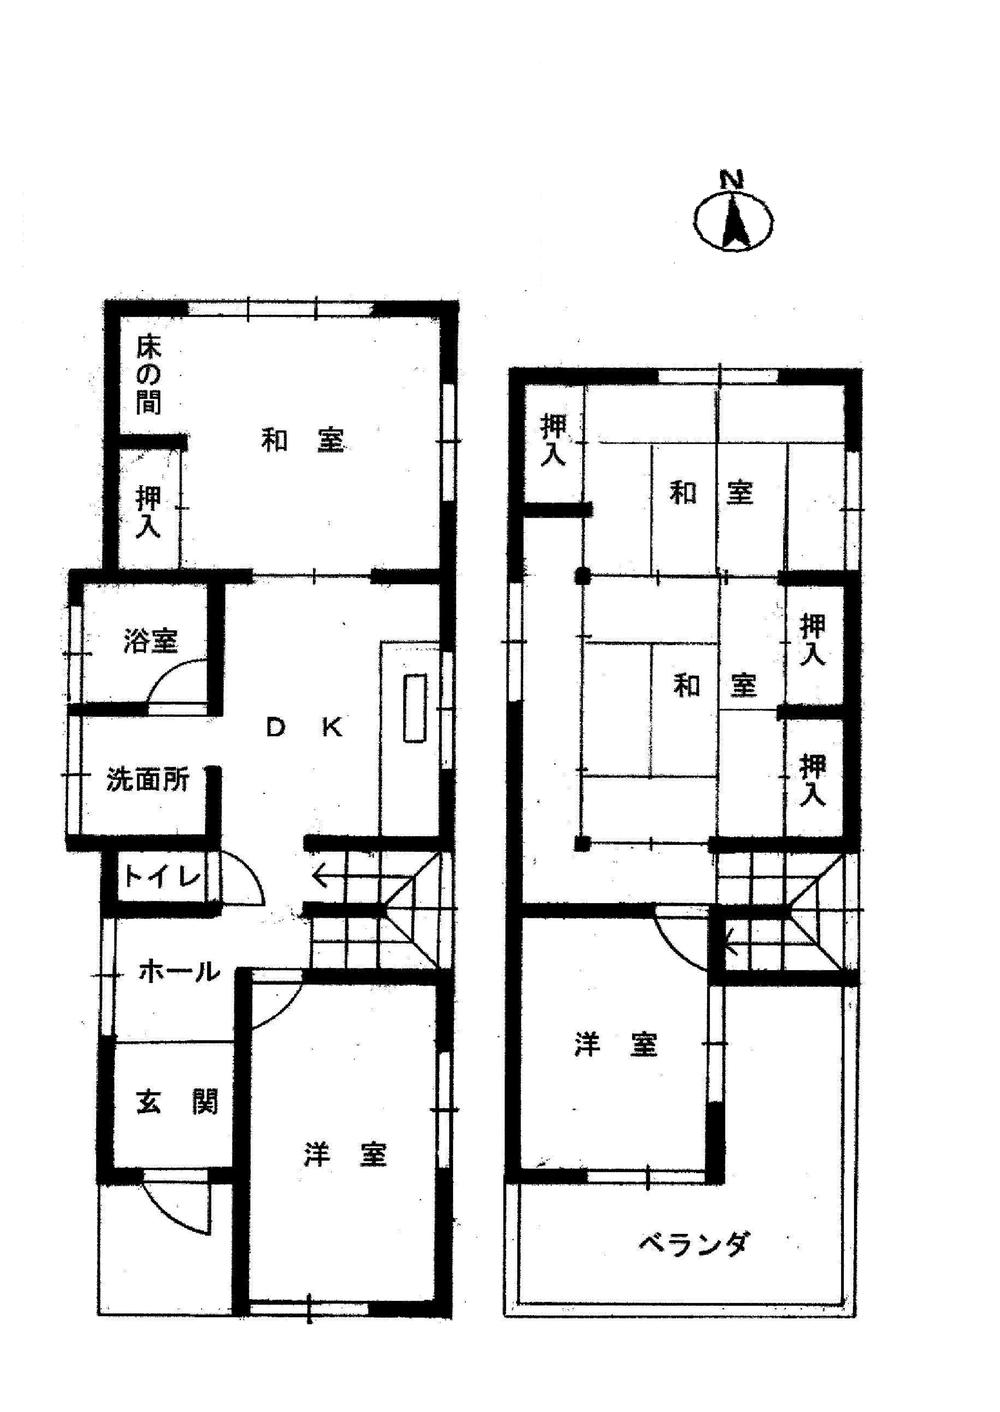 Floor plan. 19,800,000 yen, 5DK, Land area 123.96 sq m , Building area 104.59 sq m